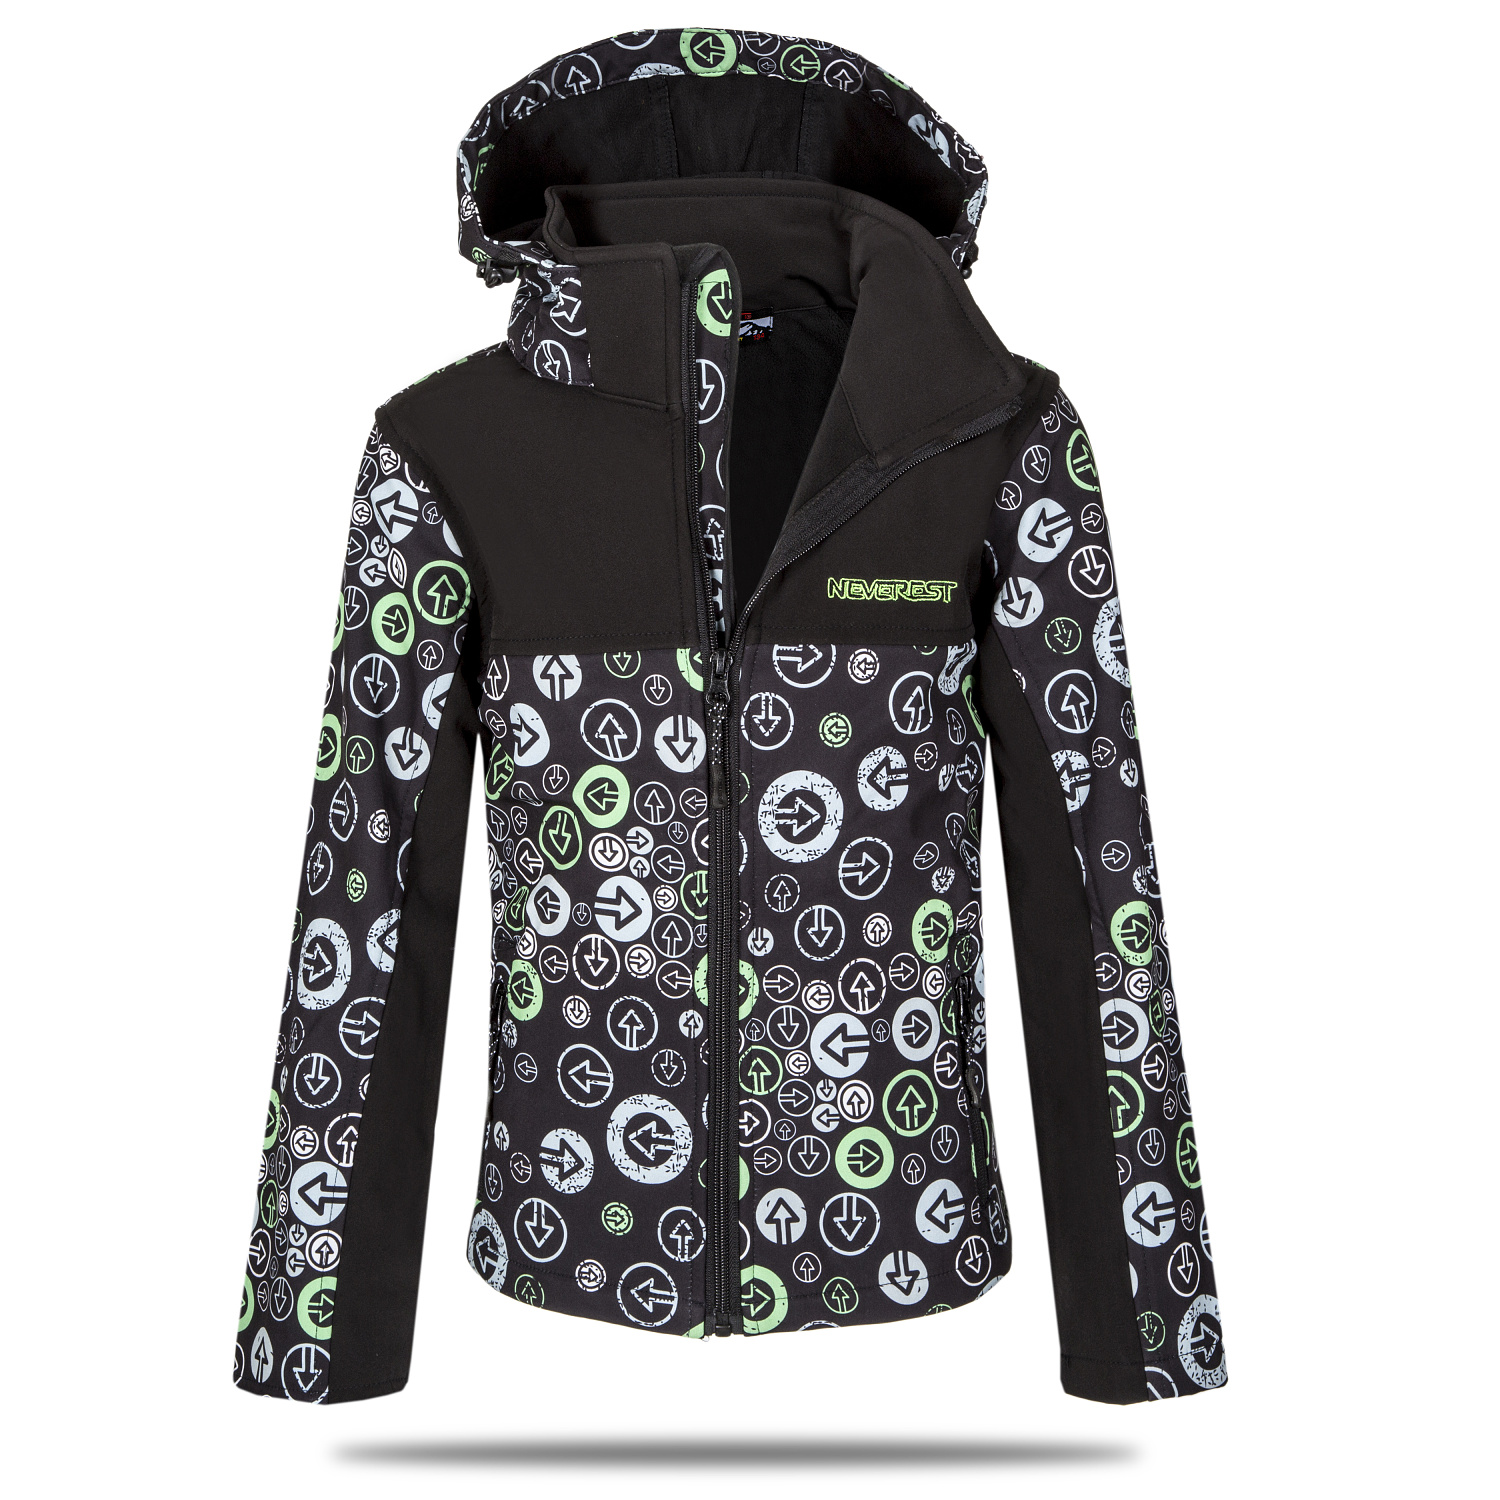 Chlapecká softshellová bunda - NEVEREST I-6296cc, černo-zelená Barva: Černo-zelená, Velikost: 98